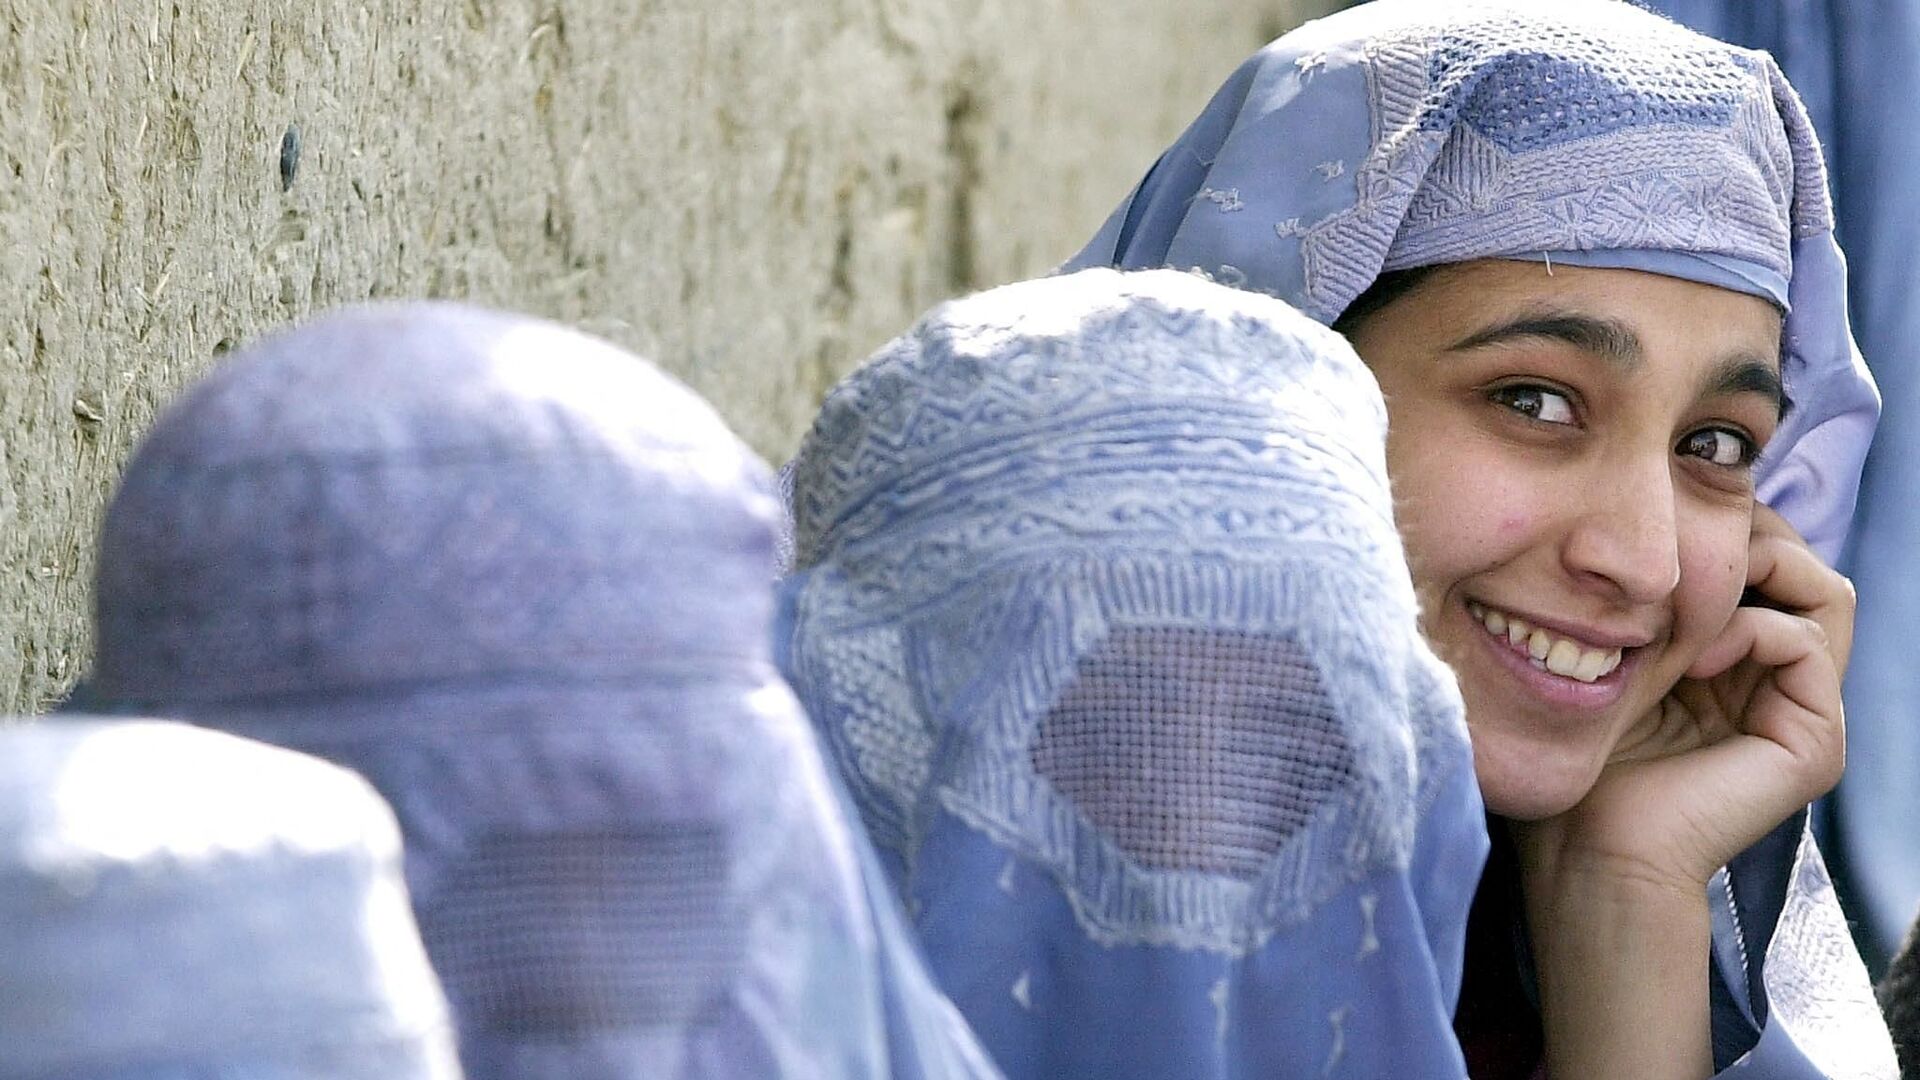 Женщины в бурках во время раздачи продуктов в Кабуле - Sputnik Тоҷикистон, 1920, 27.03.2022